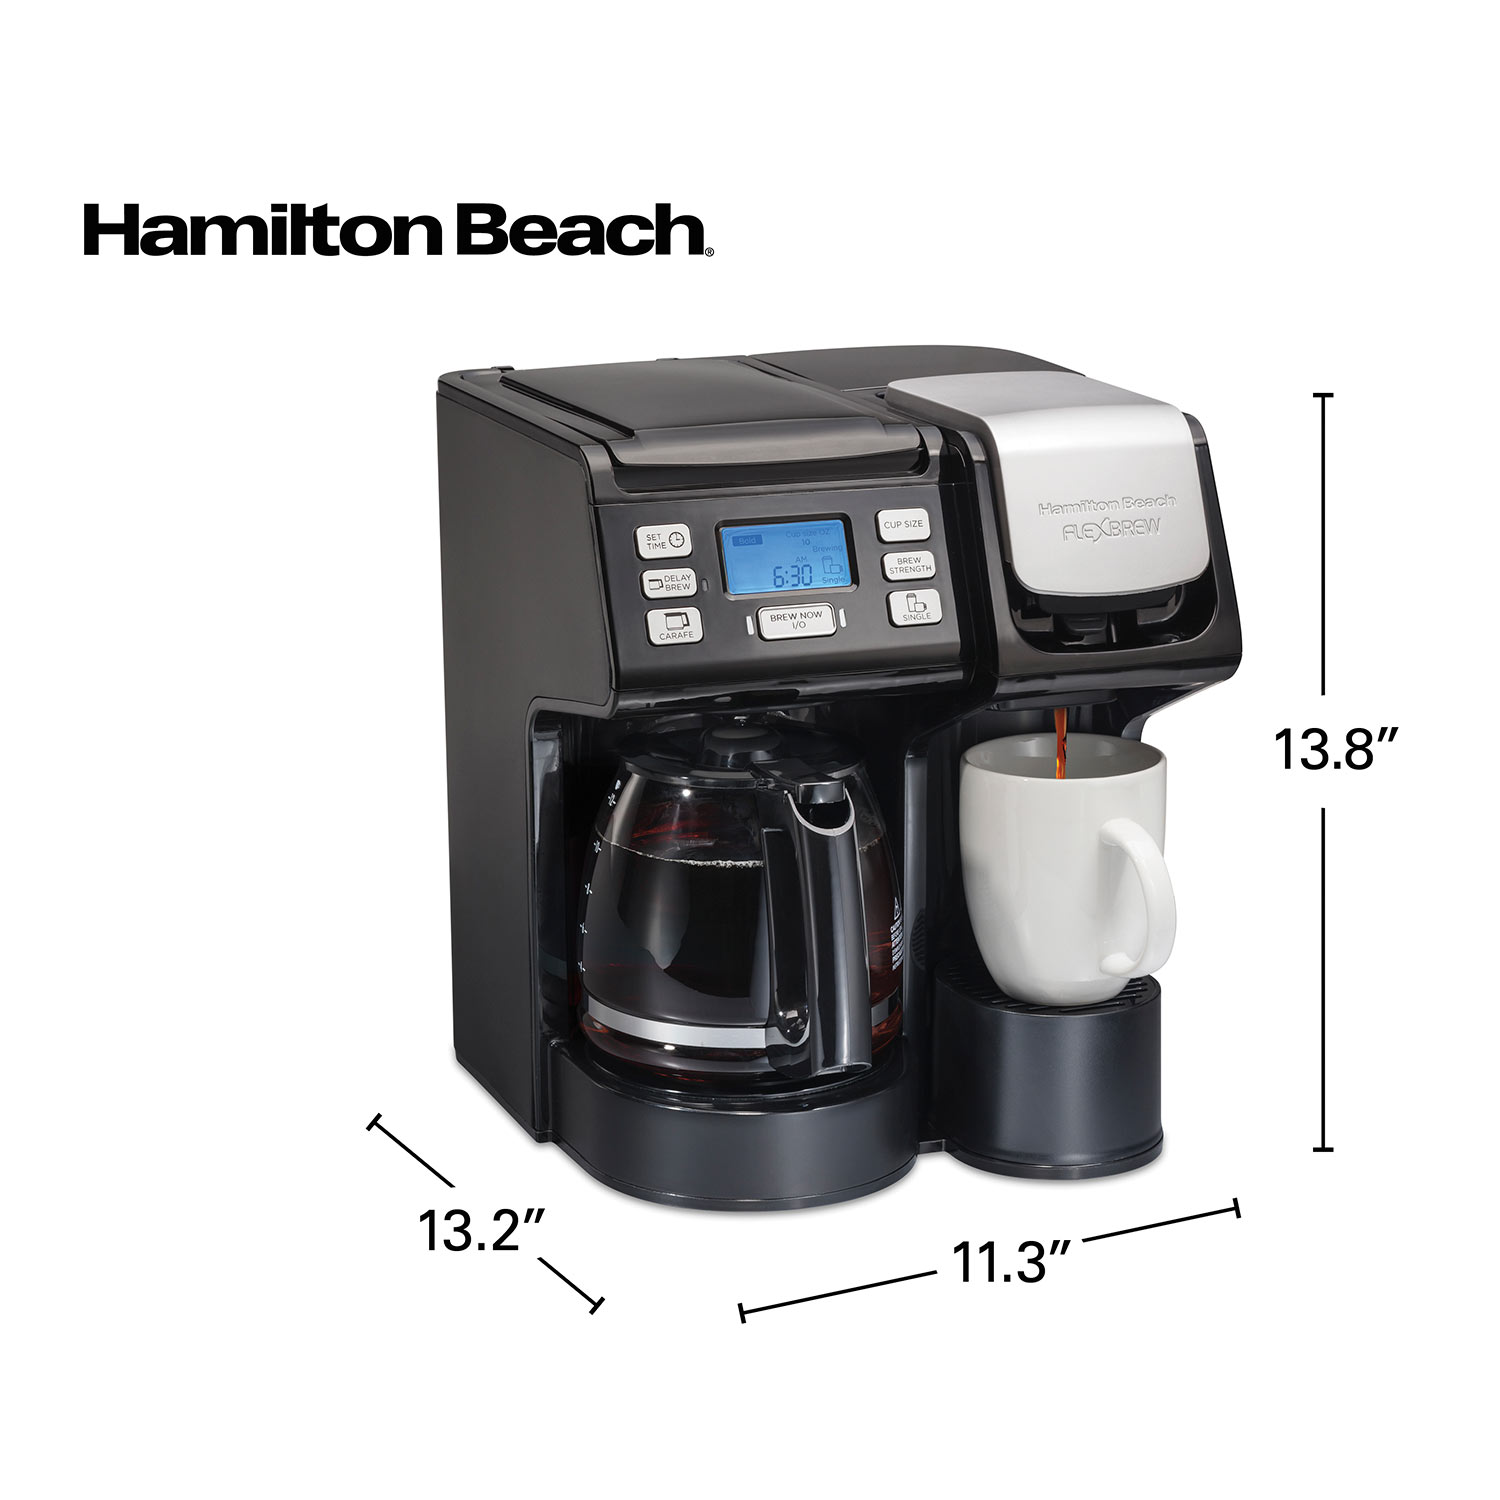 Hamilton Beach FlexBrew Trio Coffee Maker, 49902C 